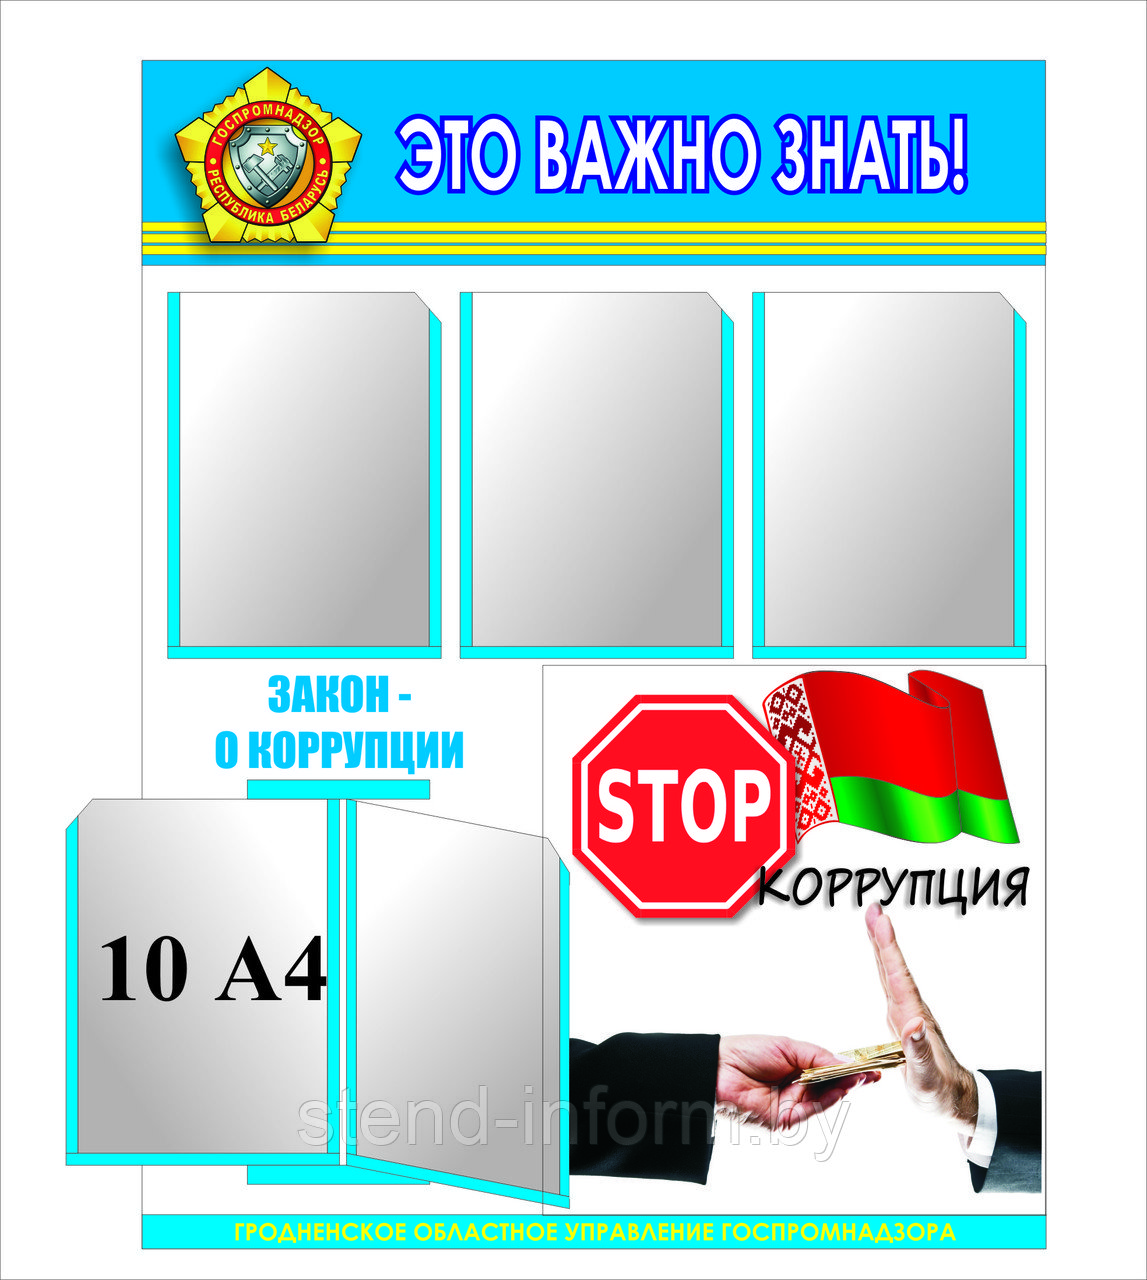 Стенд по идеологии "Борьба с коррупцией" р-р 90*100 см, с бортом  в синем цвете 